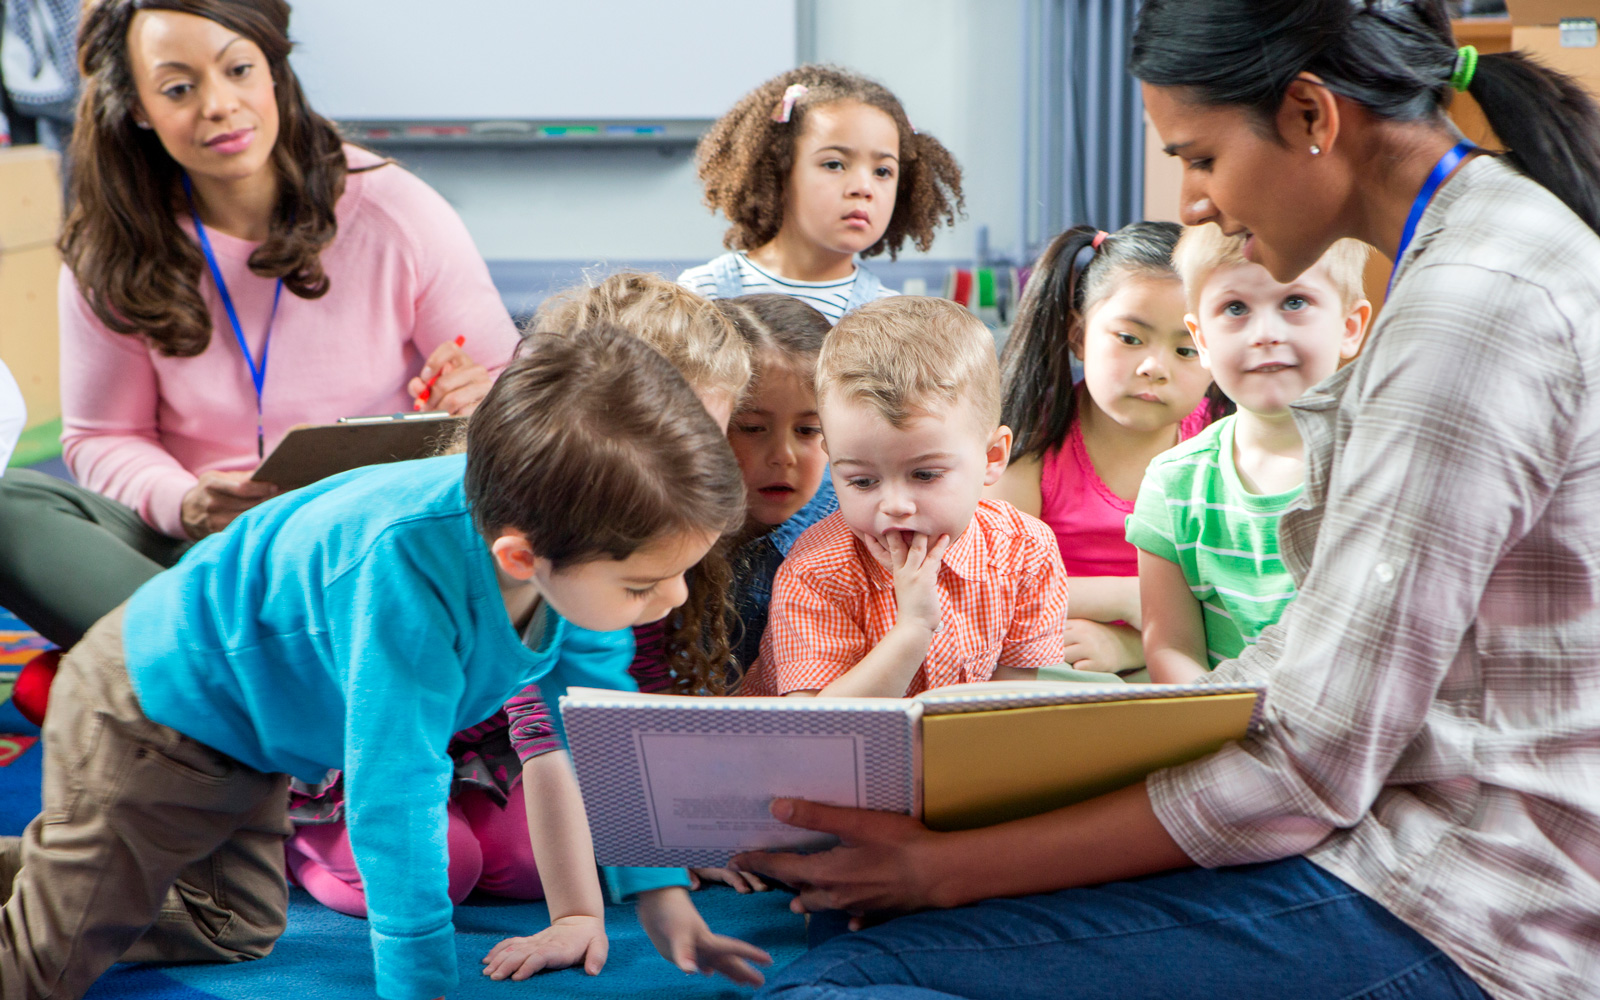 Woman Reads to Kids in Preschool Class